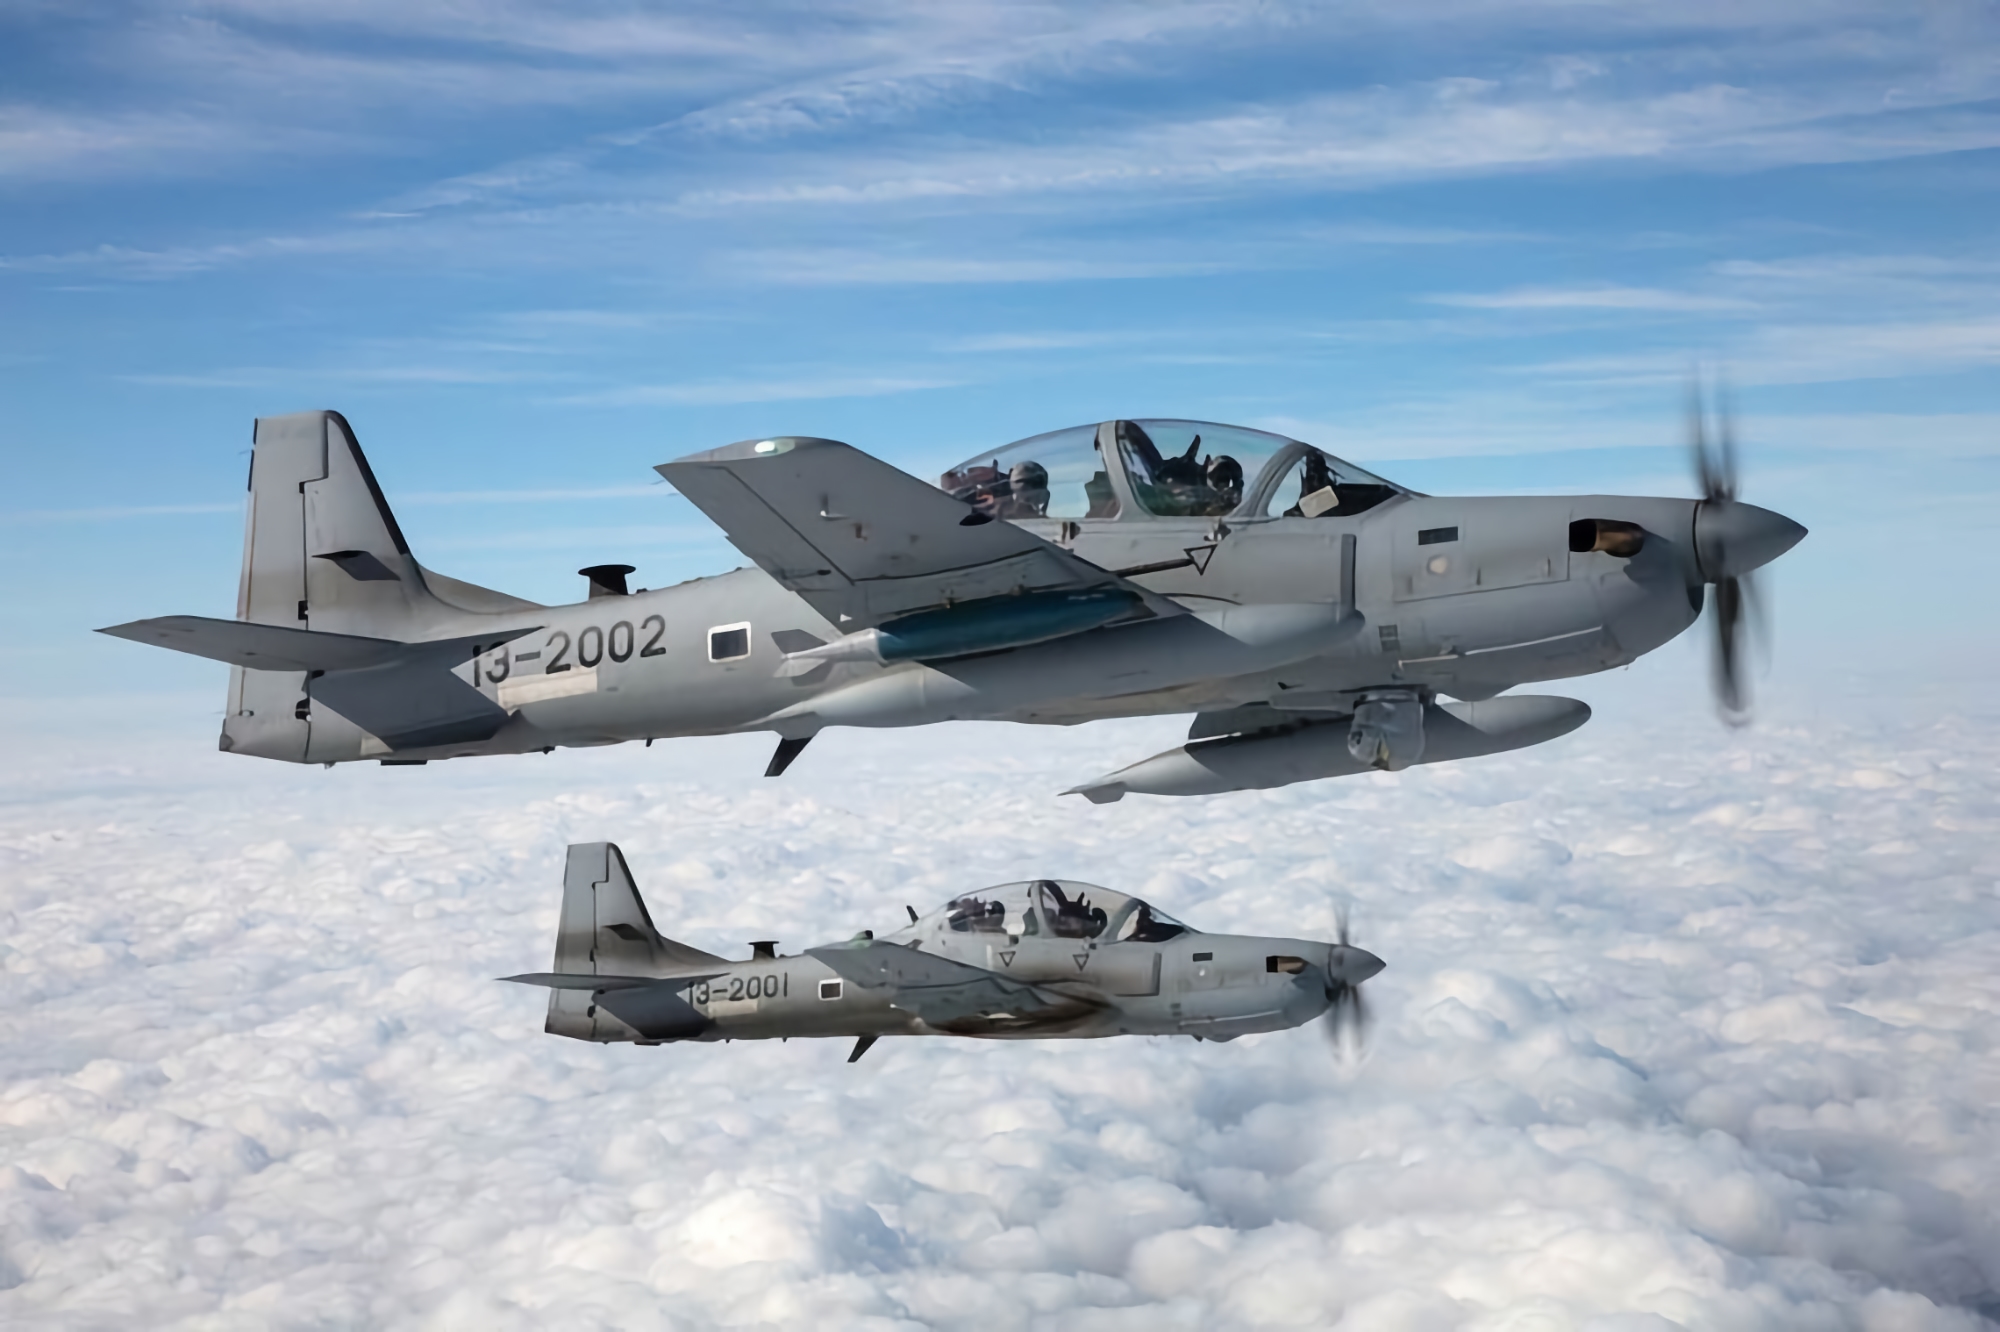 Stany Zjednoczone są gotowe do przekazania partnerom samolotów szturmowych A-29 Super Tucano i AT-6 Wolverine